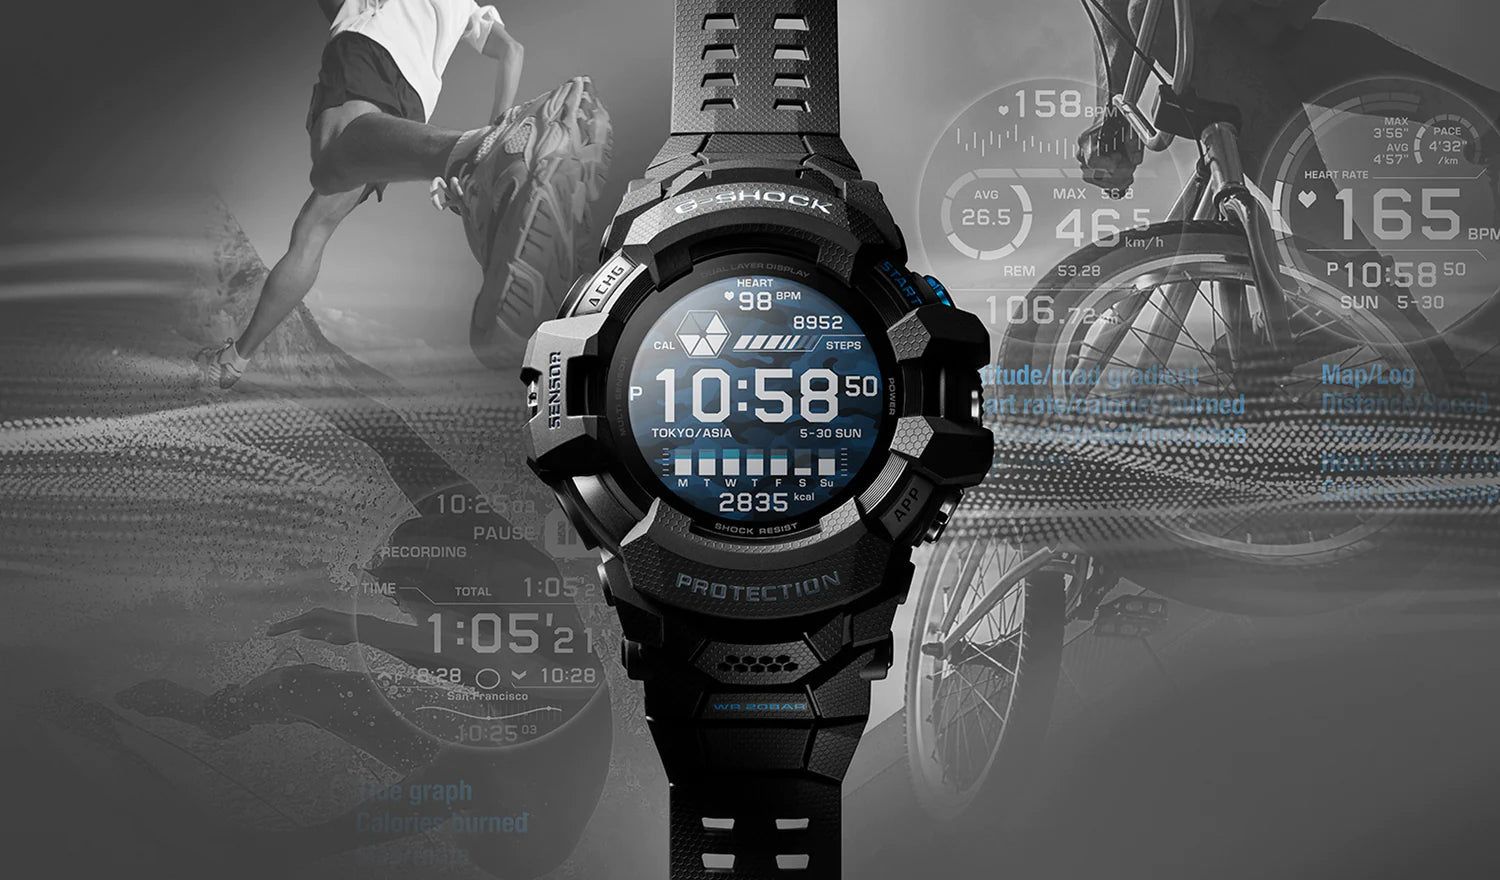 Built Tough, Built Smart - The G-Shock G-Squad Pro GSWH1000 Smartwatch! - CASIO Australia